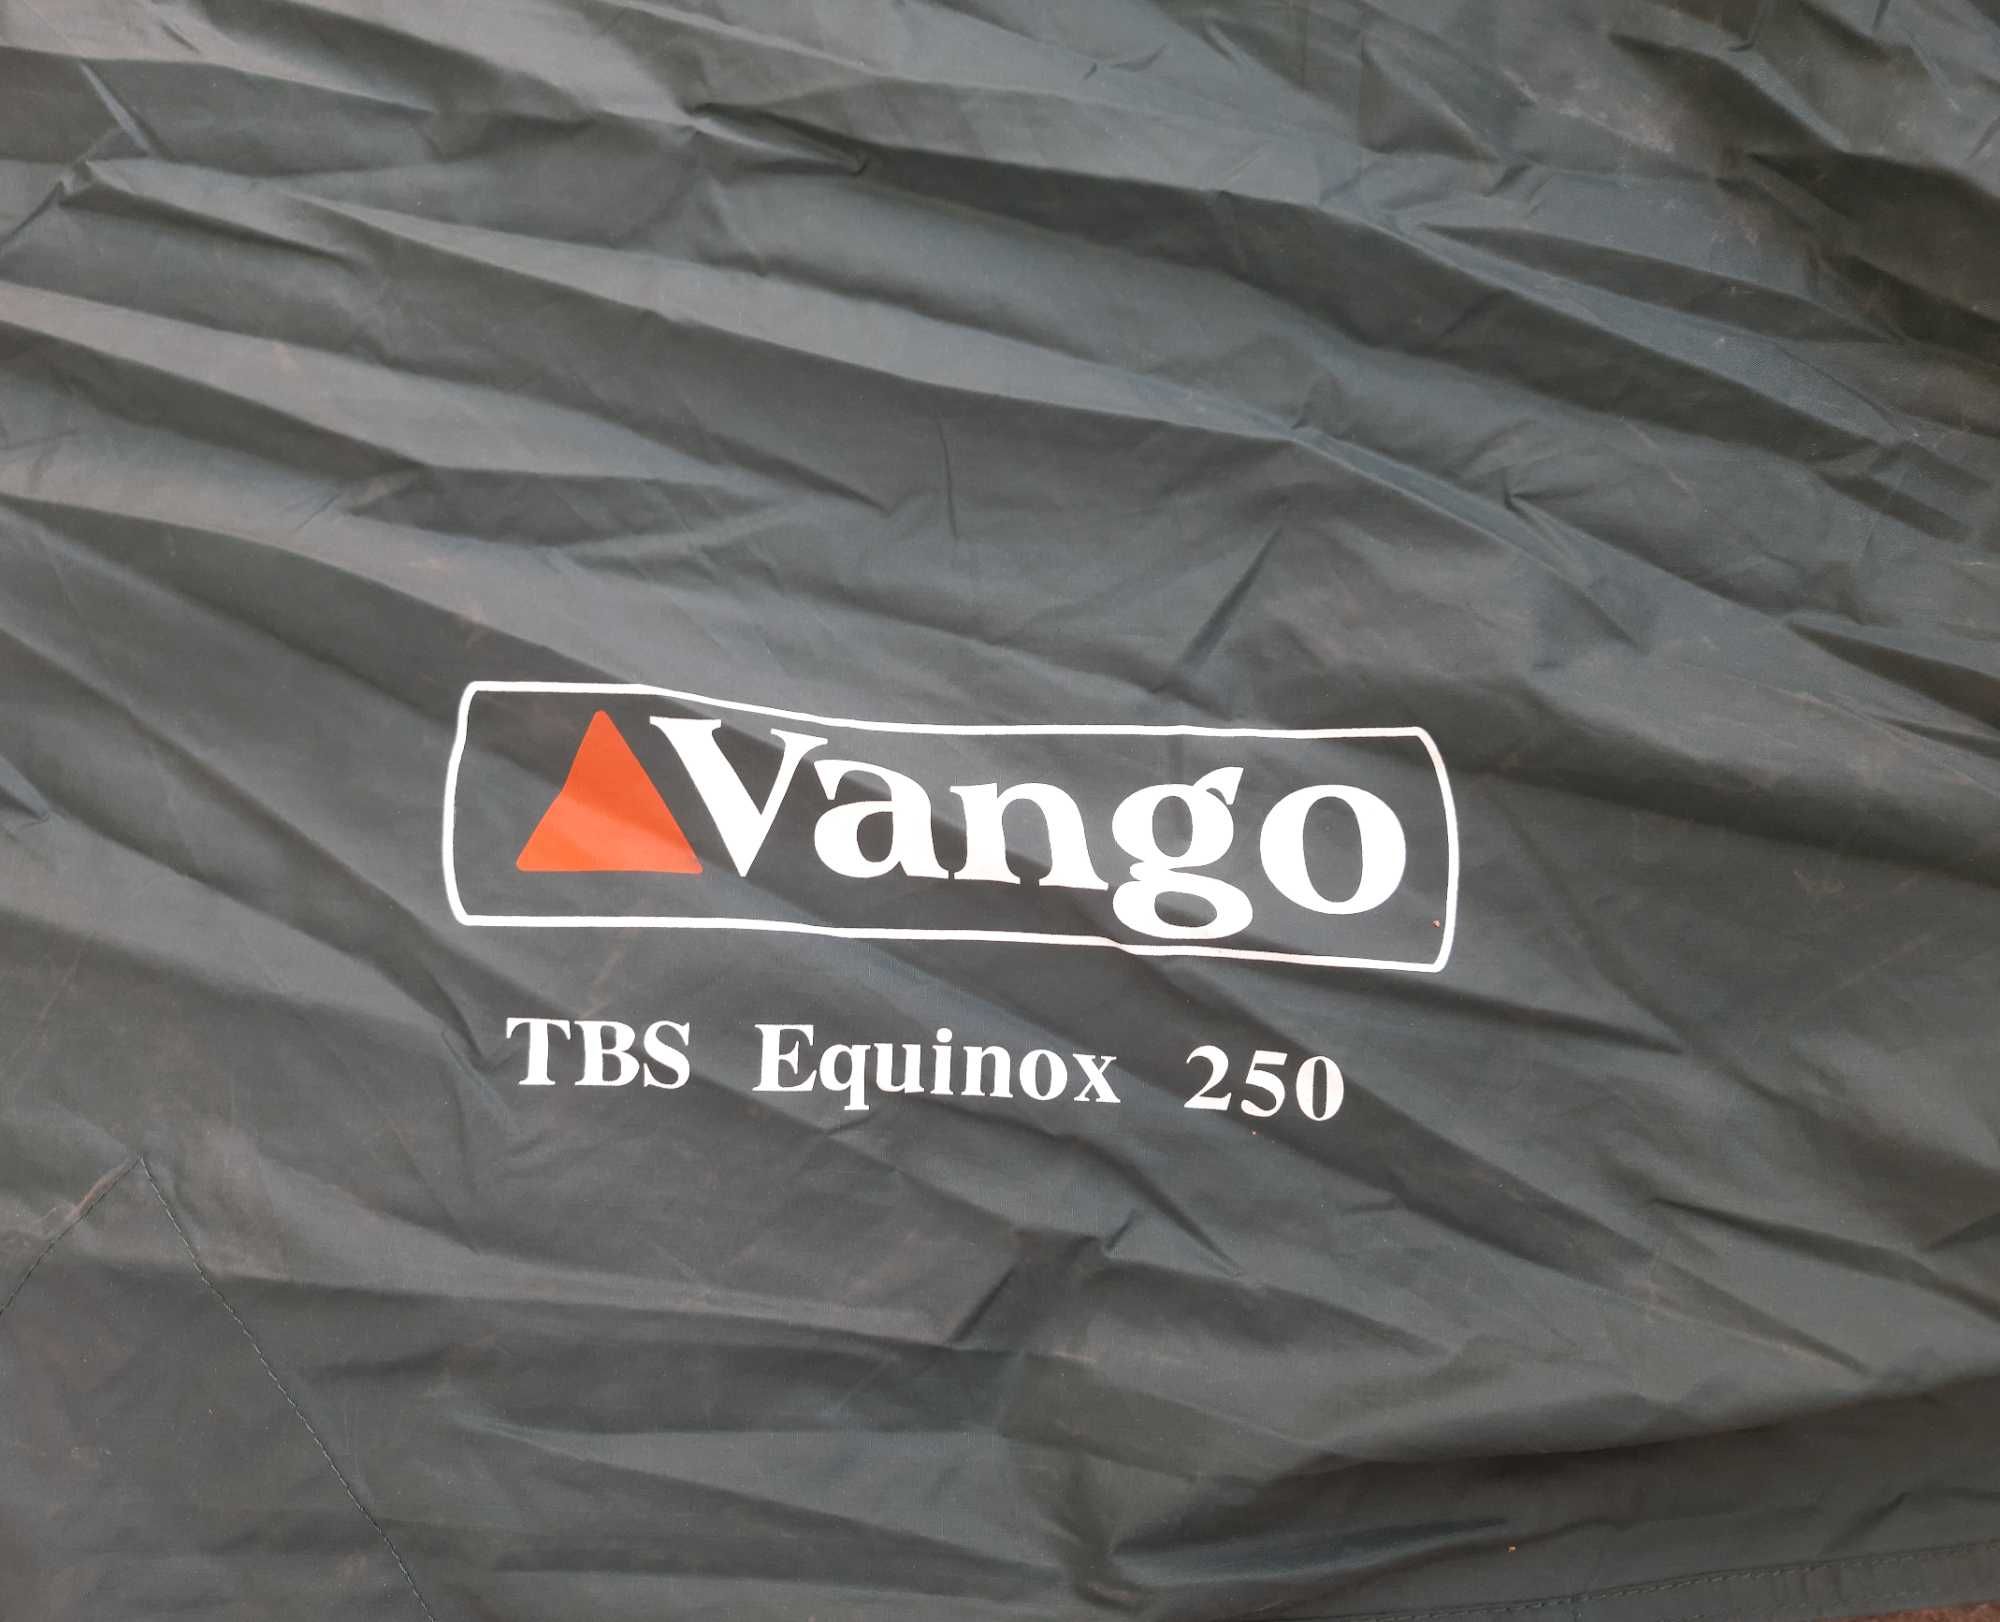 Верх 2-ух местной палатки Vango Equinox 250 TBS (тент для авто).